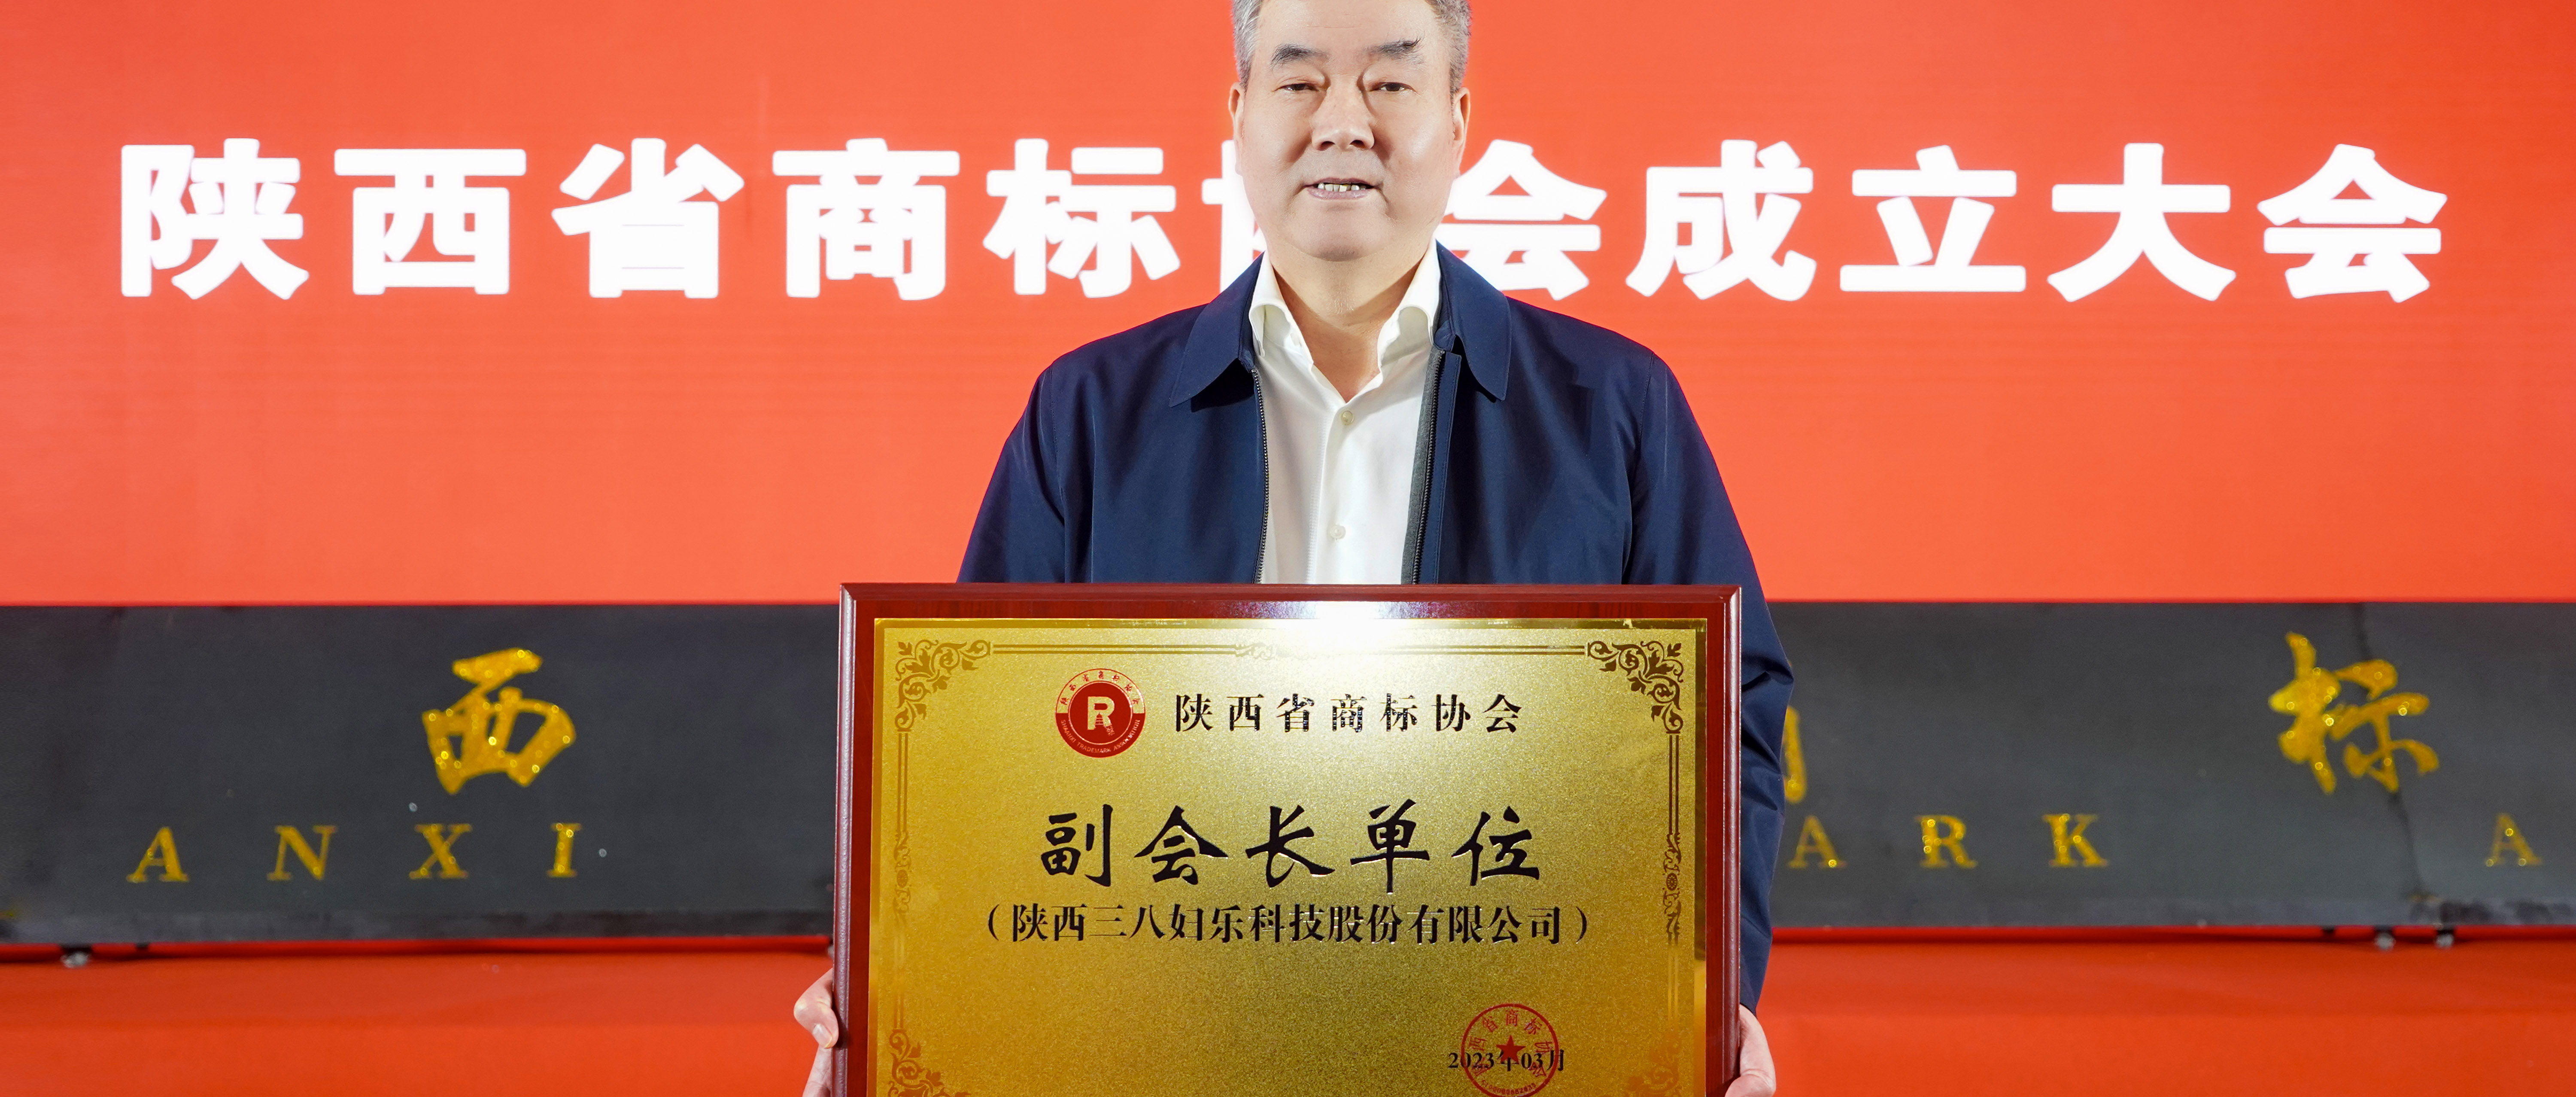 新闻 | 三八妇乐当选陕西省商标协会副会长单位